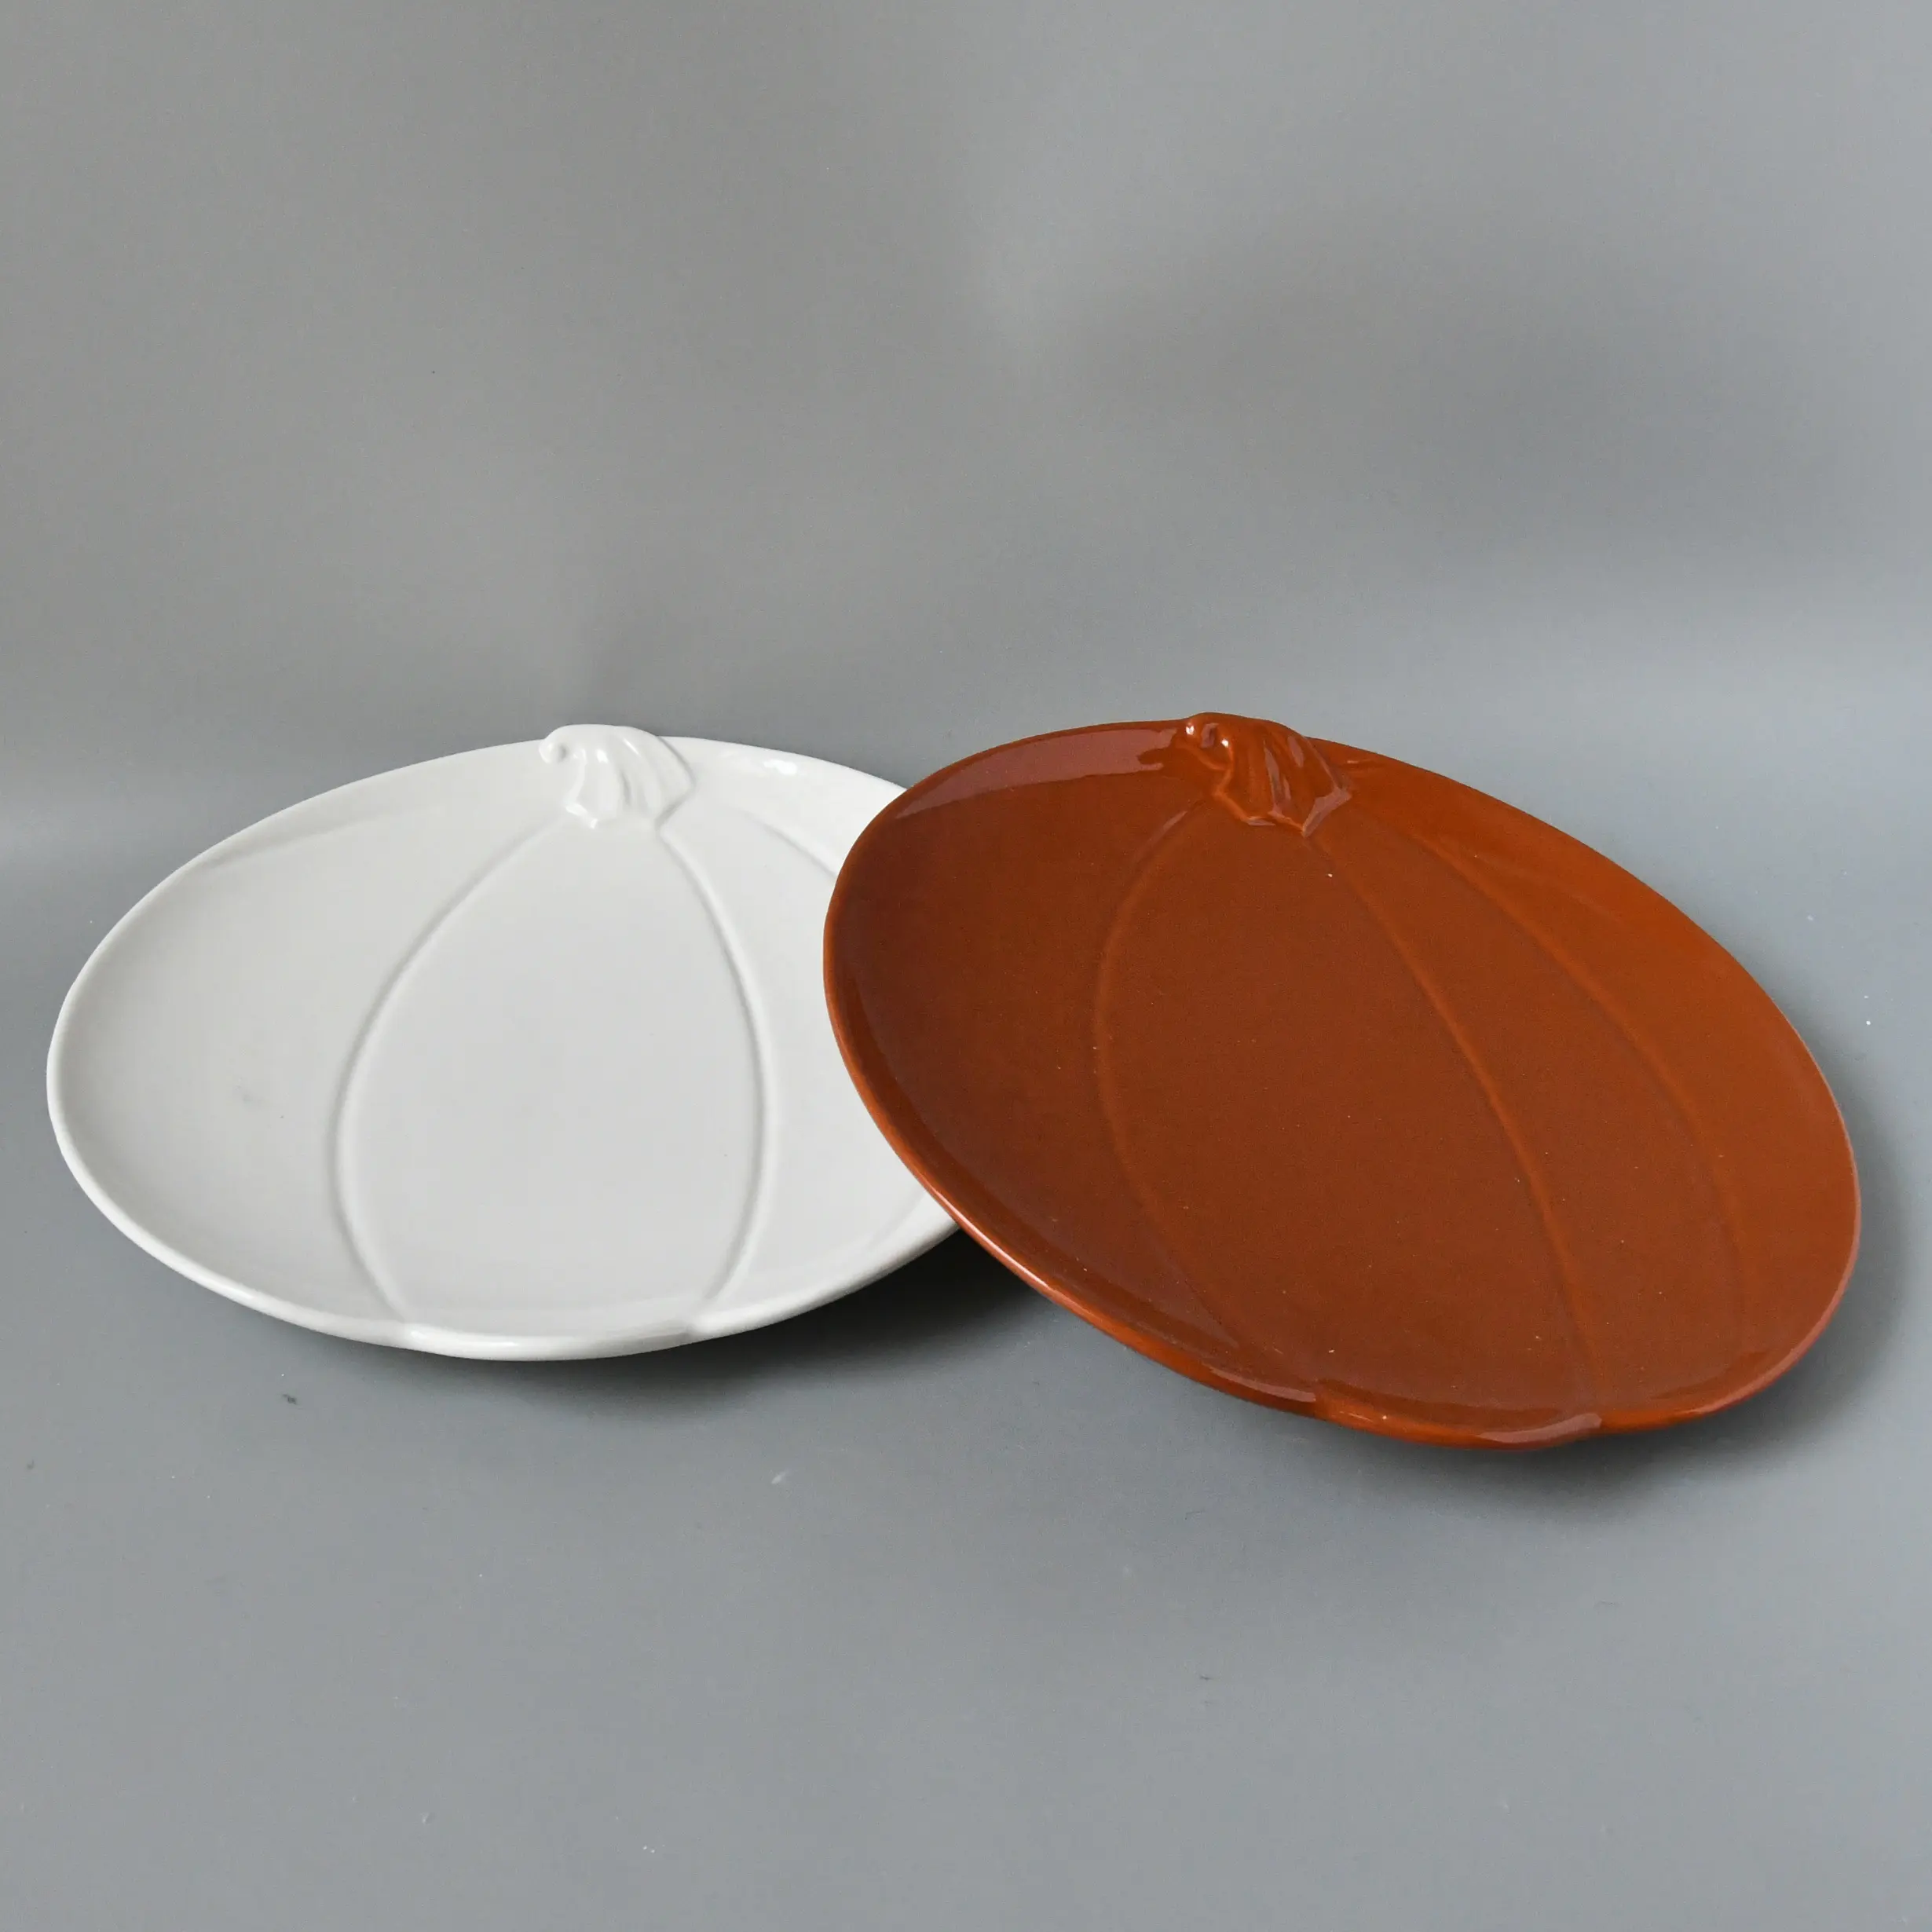 그림 호박 식기 컬렉션 호박 모양의 식당 접시 할로윈 세라믹 매칭 호박 접시